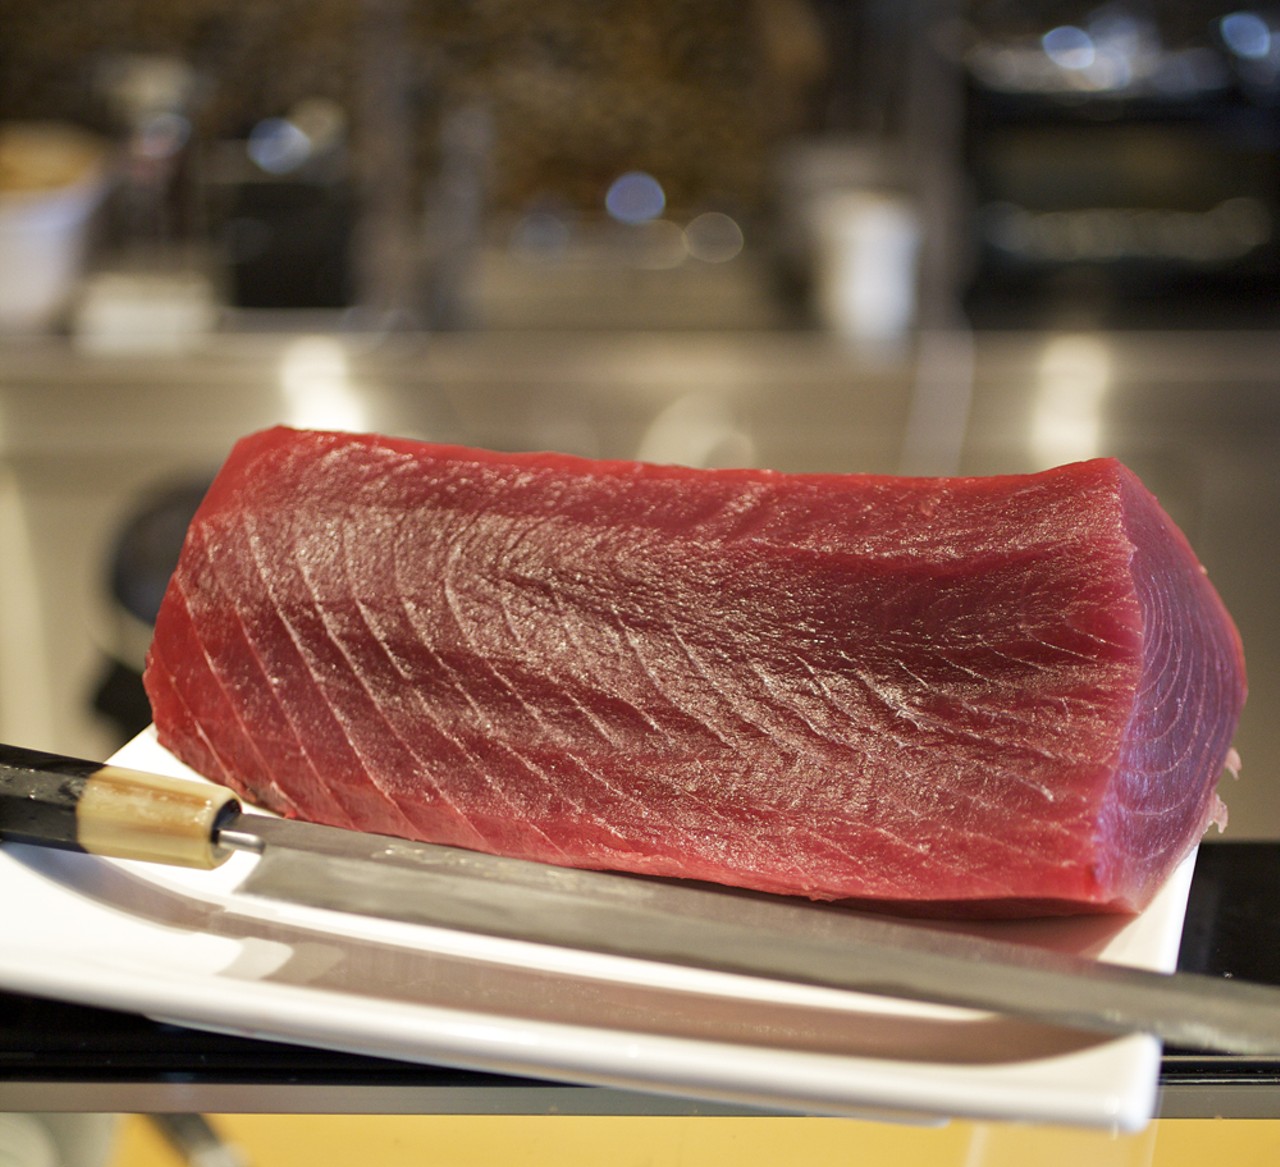 A cut of tuna in the kitchen.